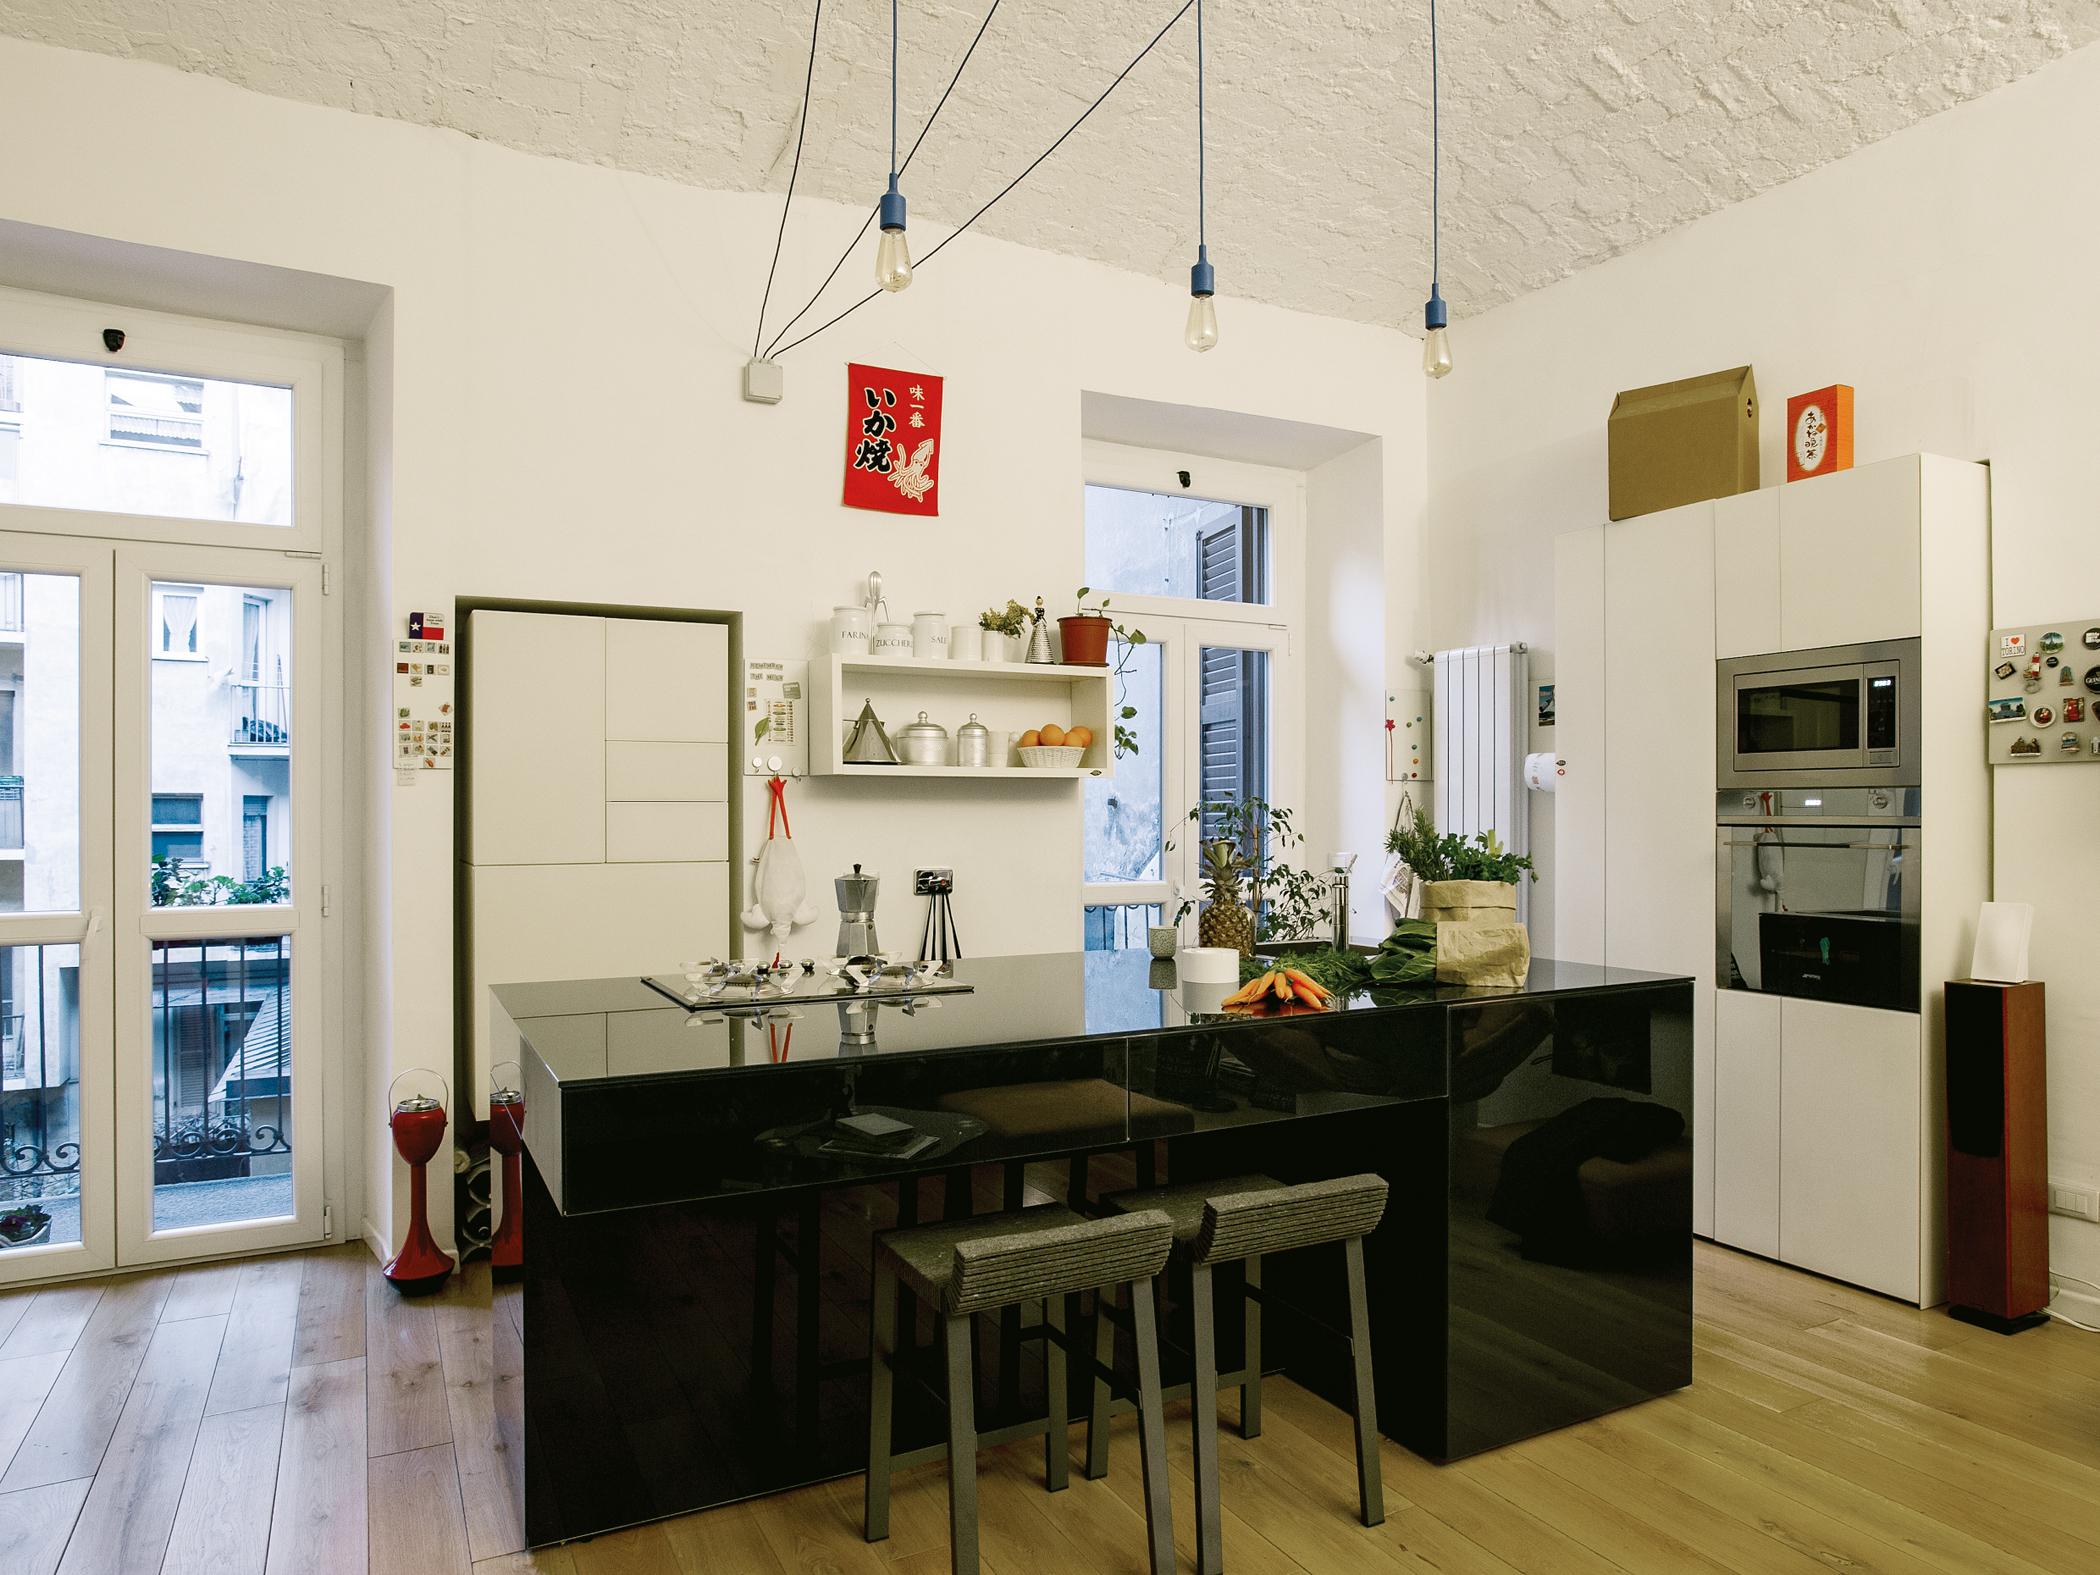 Moderne Kücheninsel #barhocker #regal #wandspiegel #kücheninsel #weißerküchenschrank #schwarzekücheninsel ©Lago